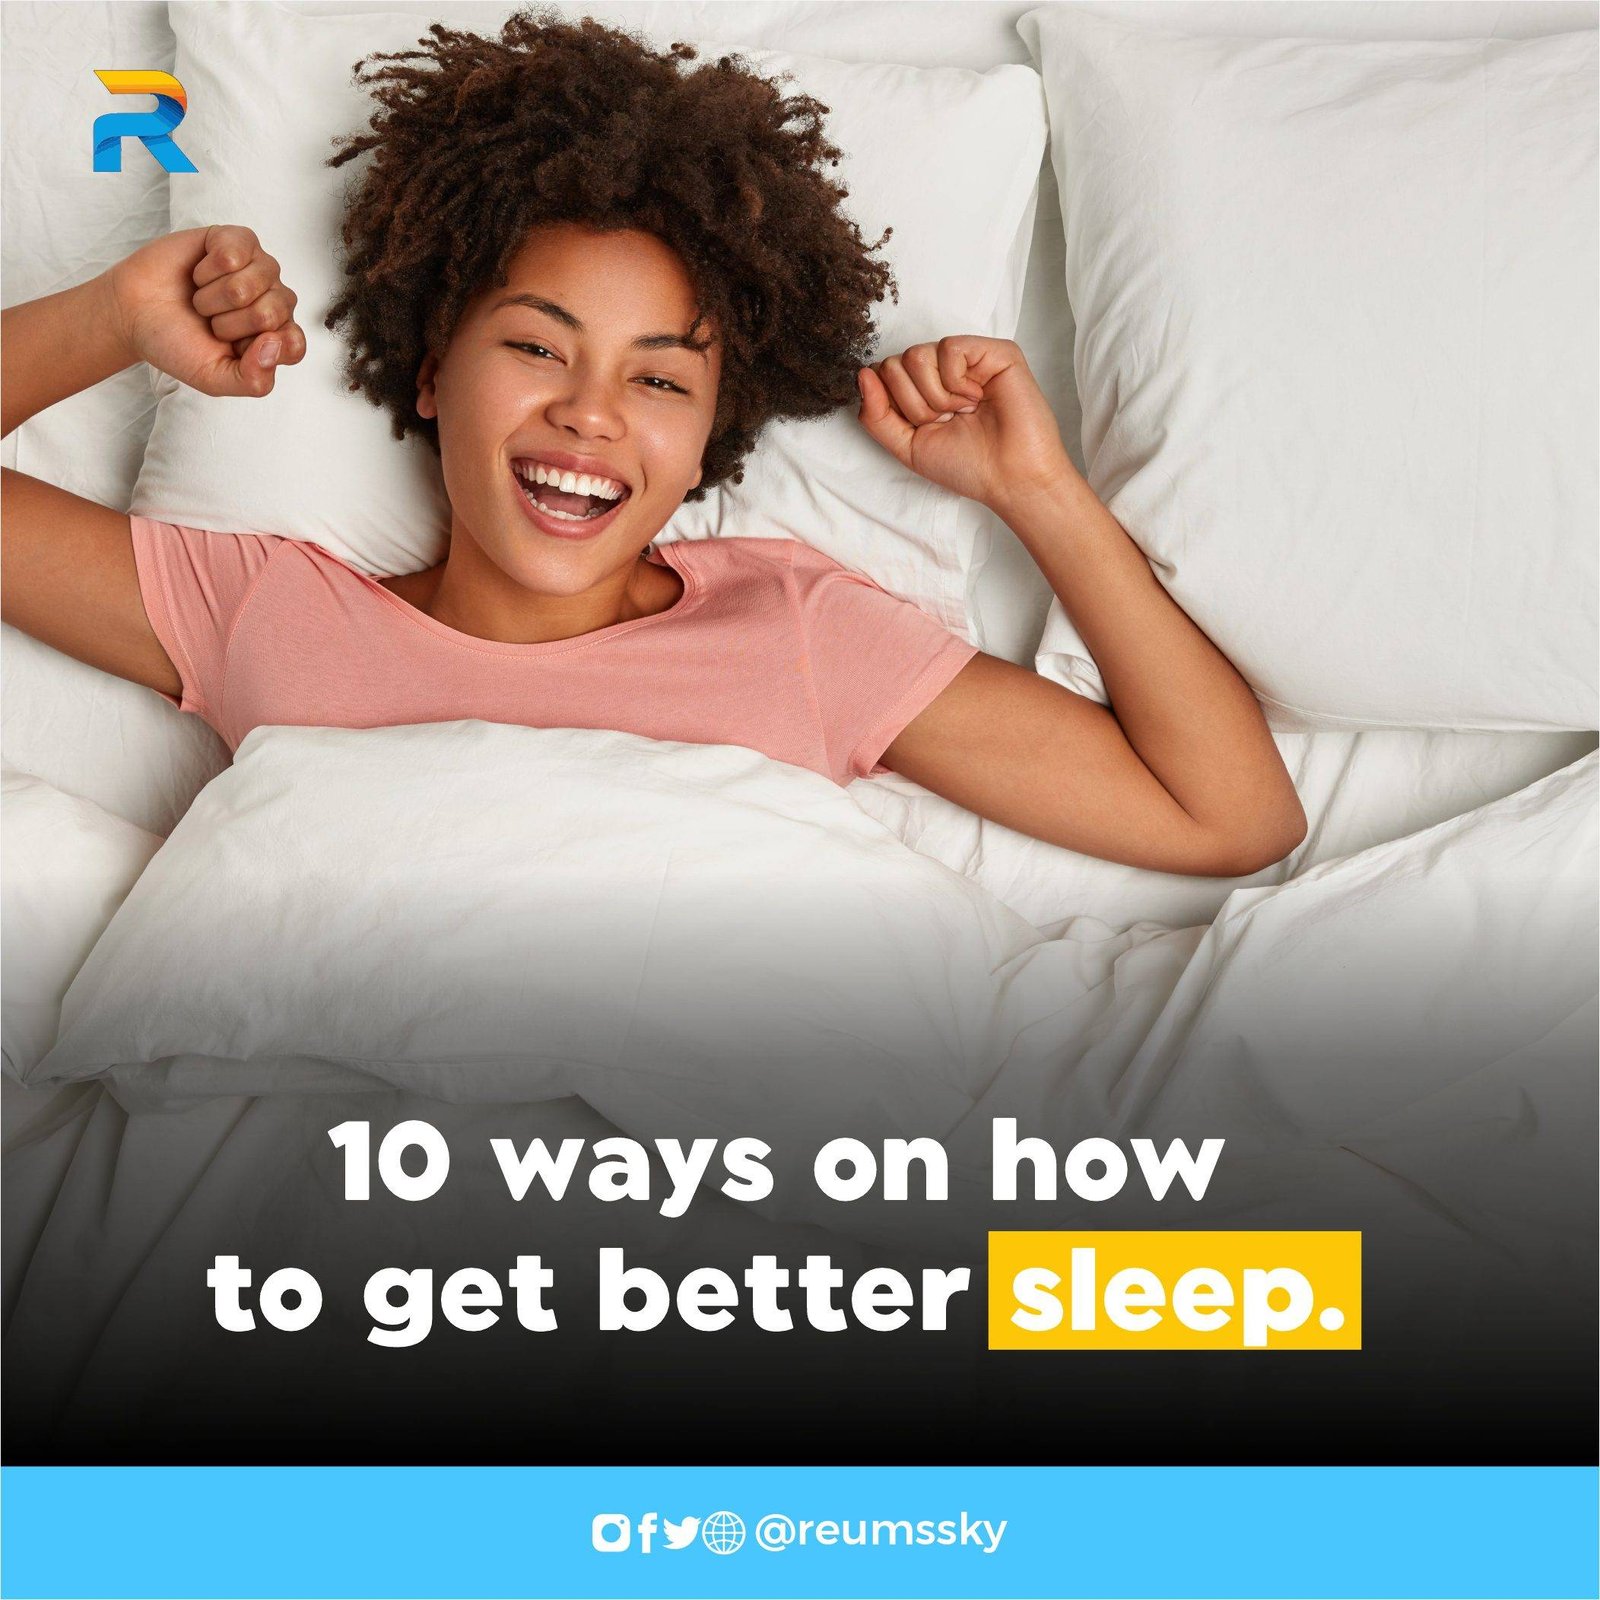 Better sleep